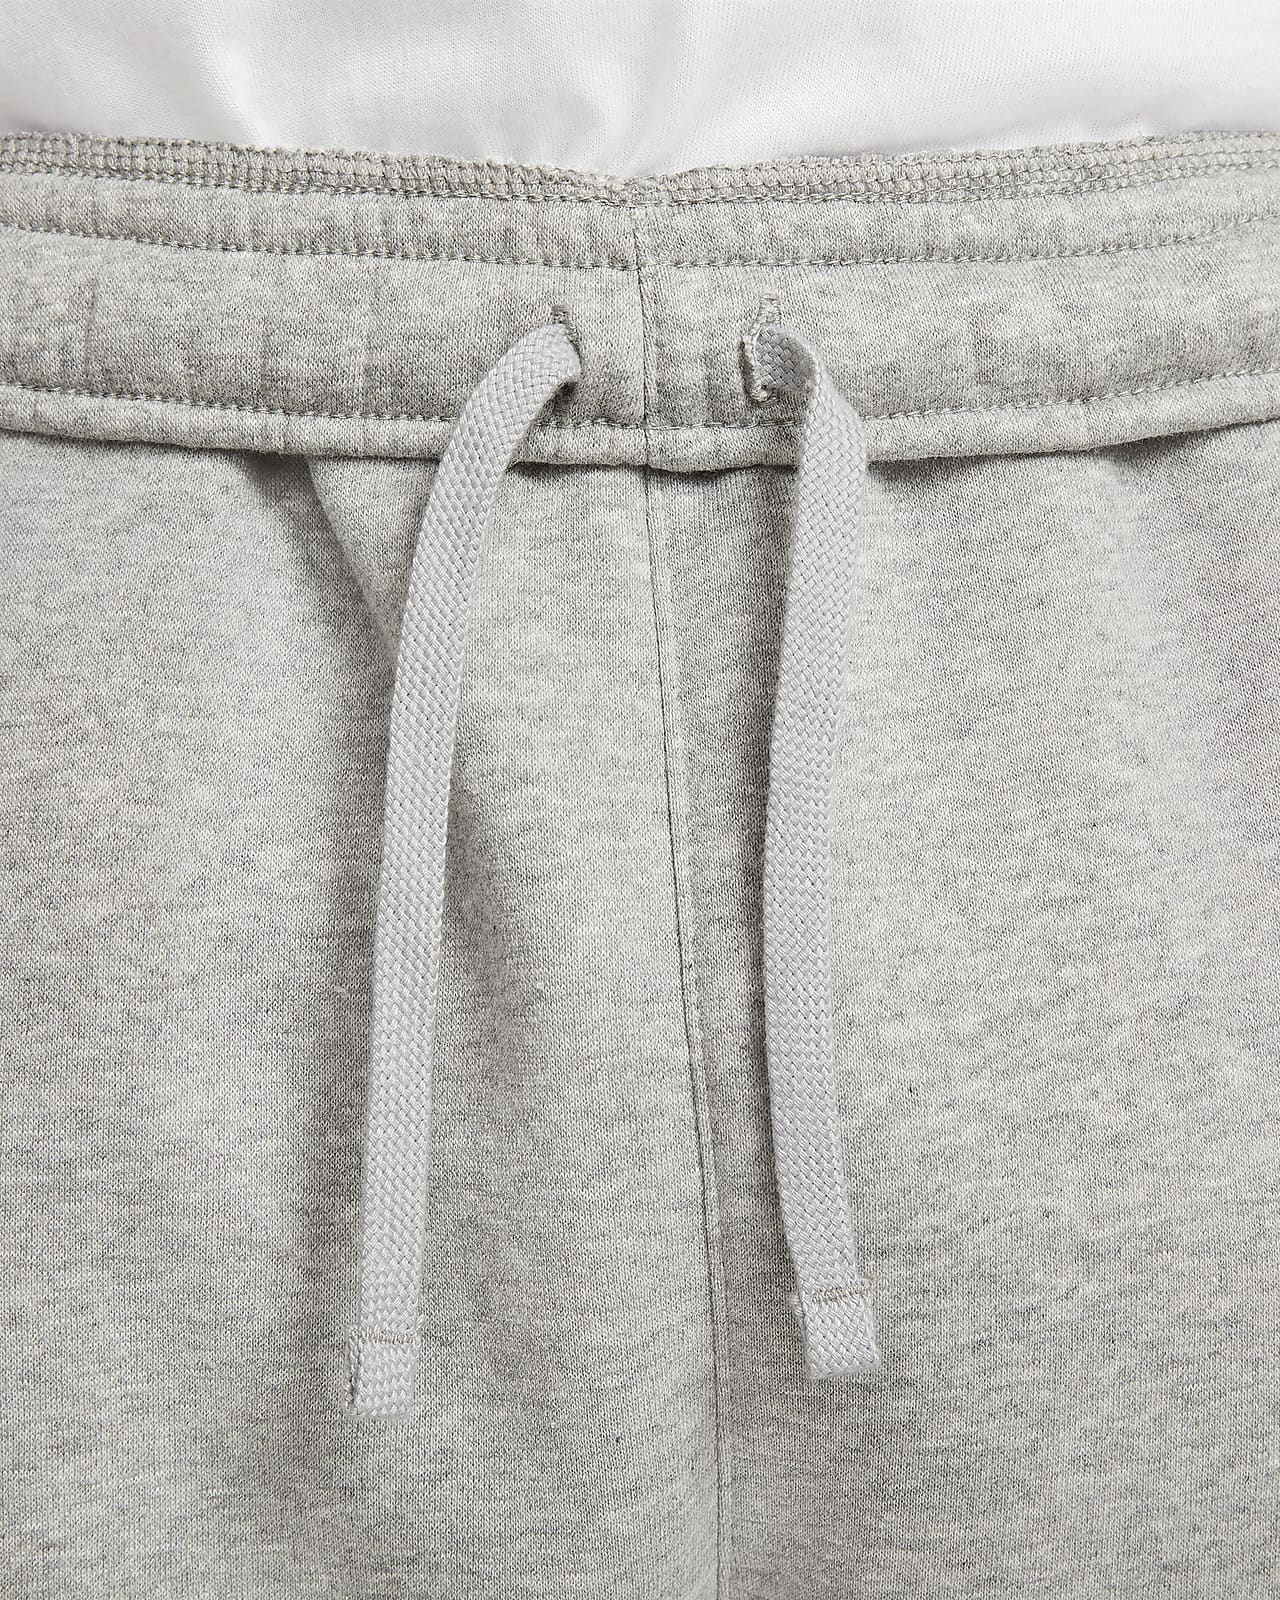 Calças cargo Nike Sportswear Air Fleece brancas para homem